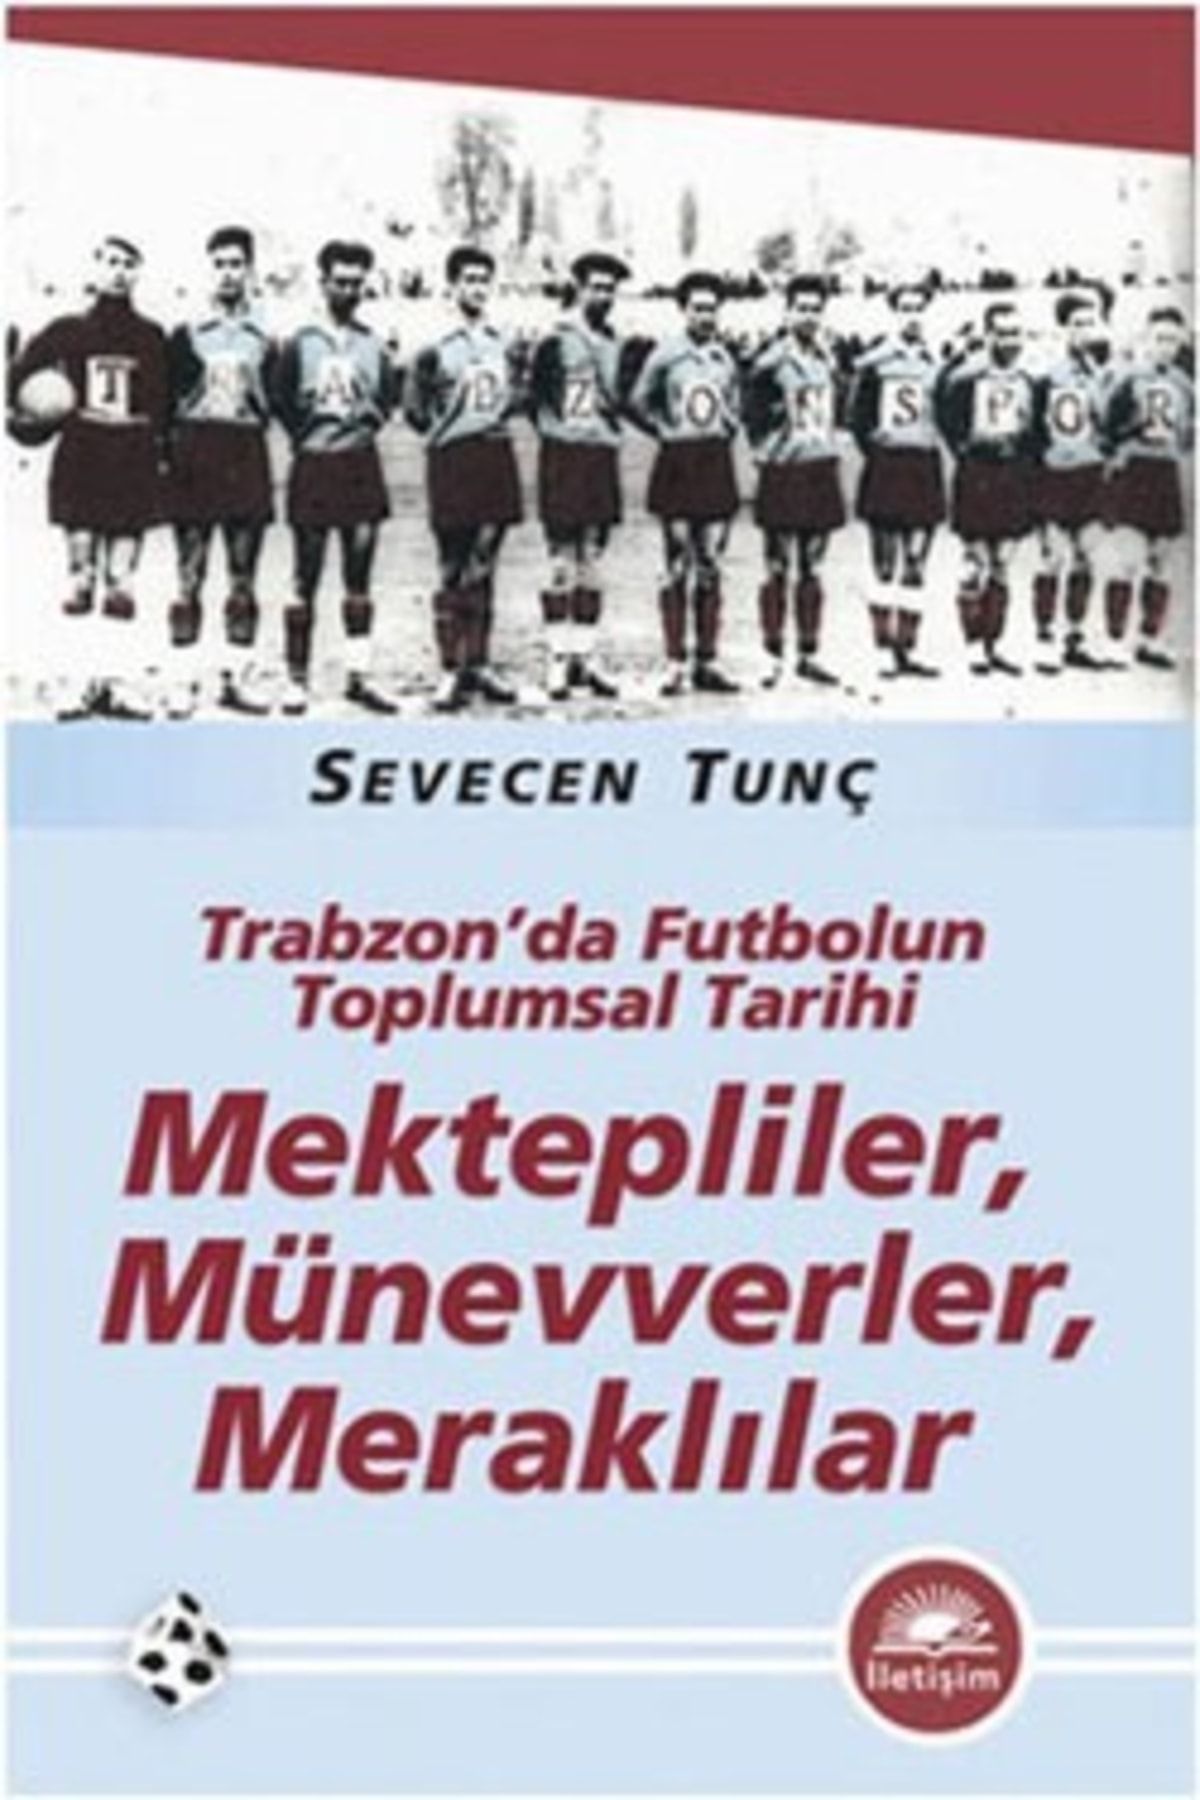 İletişim Yayınları Mektepliler, Münevverler, Meraklılar: Trabzon'da Futbolun Toplumsal Tarihi Sevecen Tunç